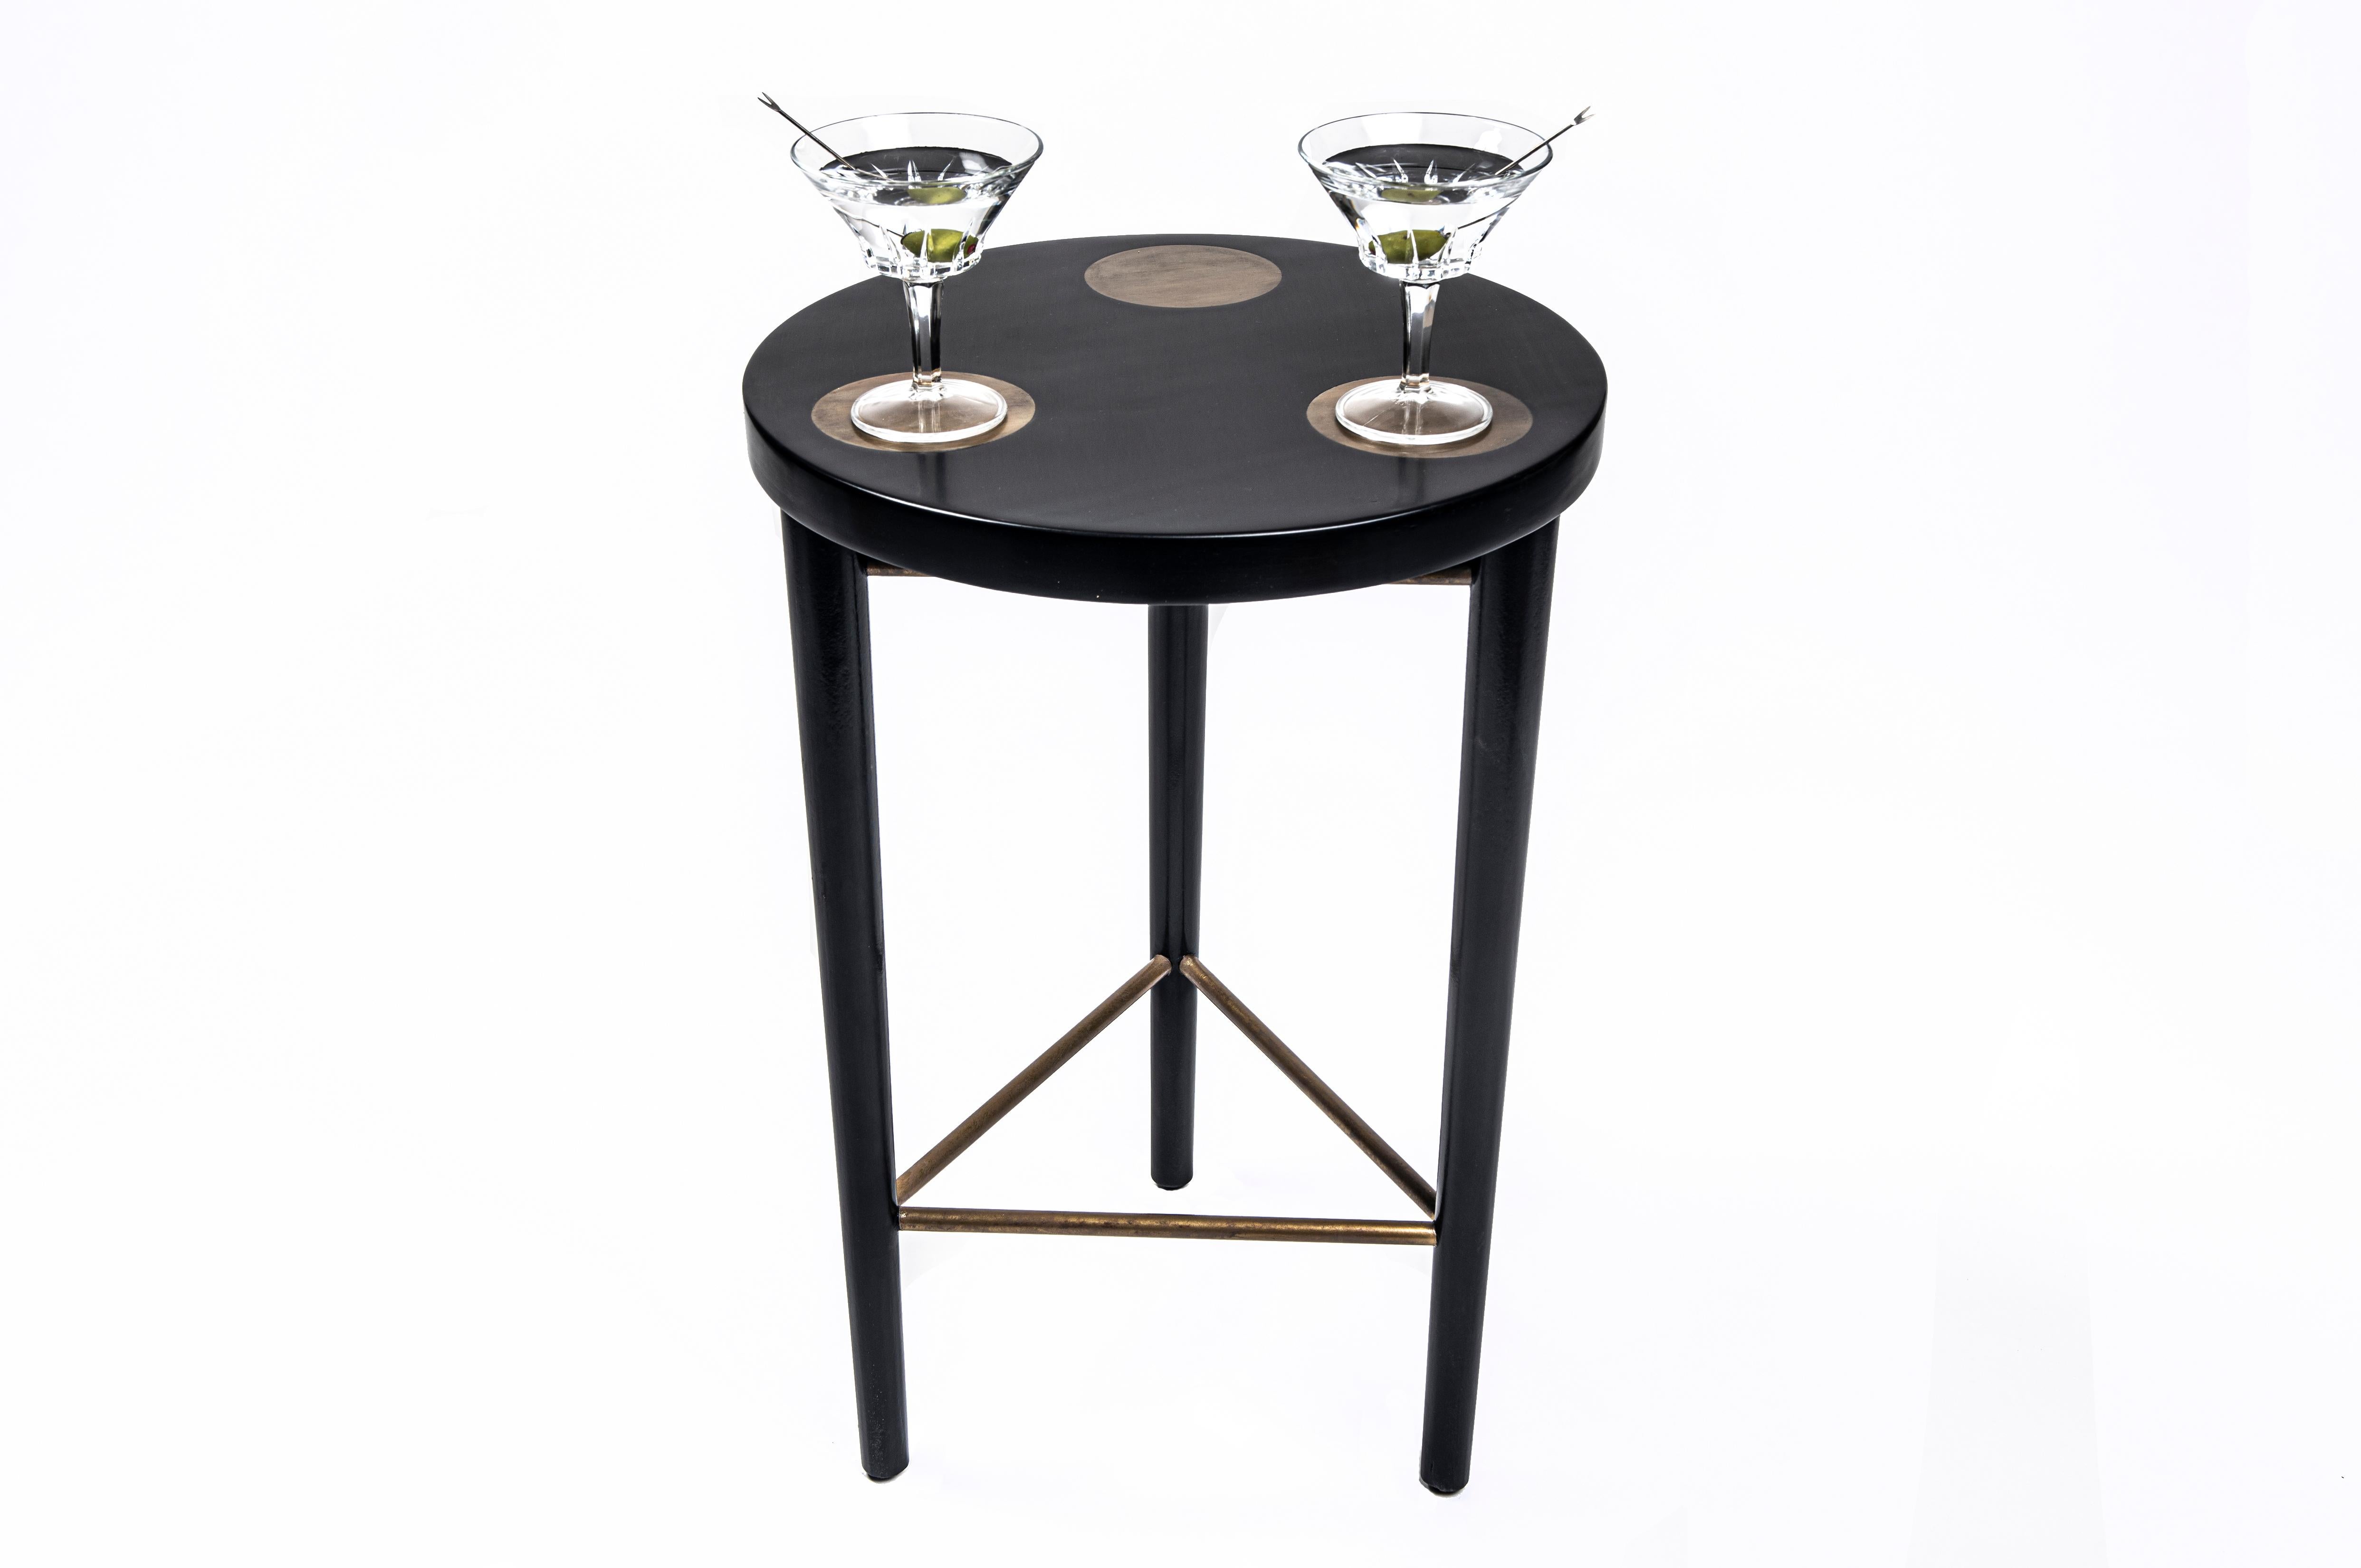 Le Bond Cocktail fait partie de la collection Modern Hepburn qui établit une norme en matière de mobilier sophistiqué et intemporel tout en restant pratique et fonctionnel pour la vie moderne quotidienne.

Inspirée par la magie d'une connexion